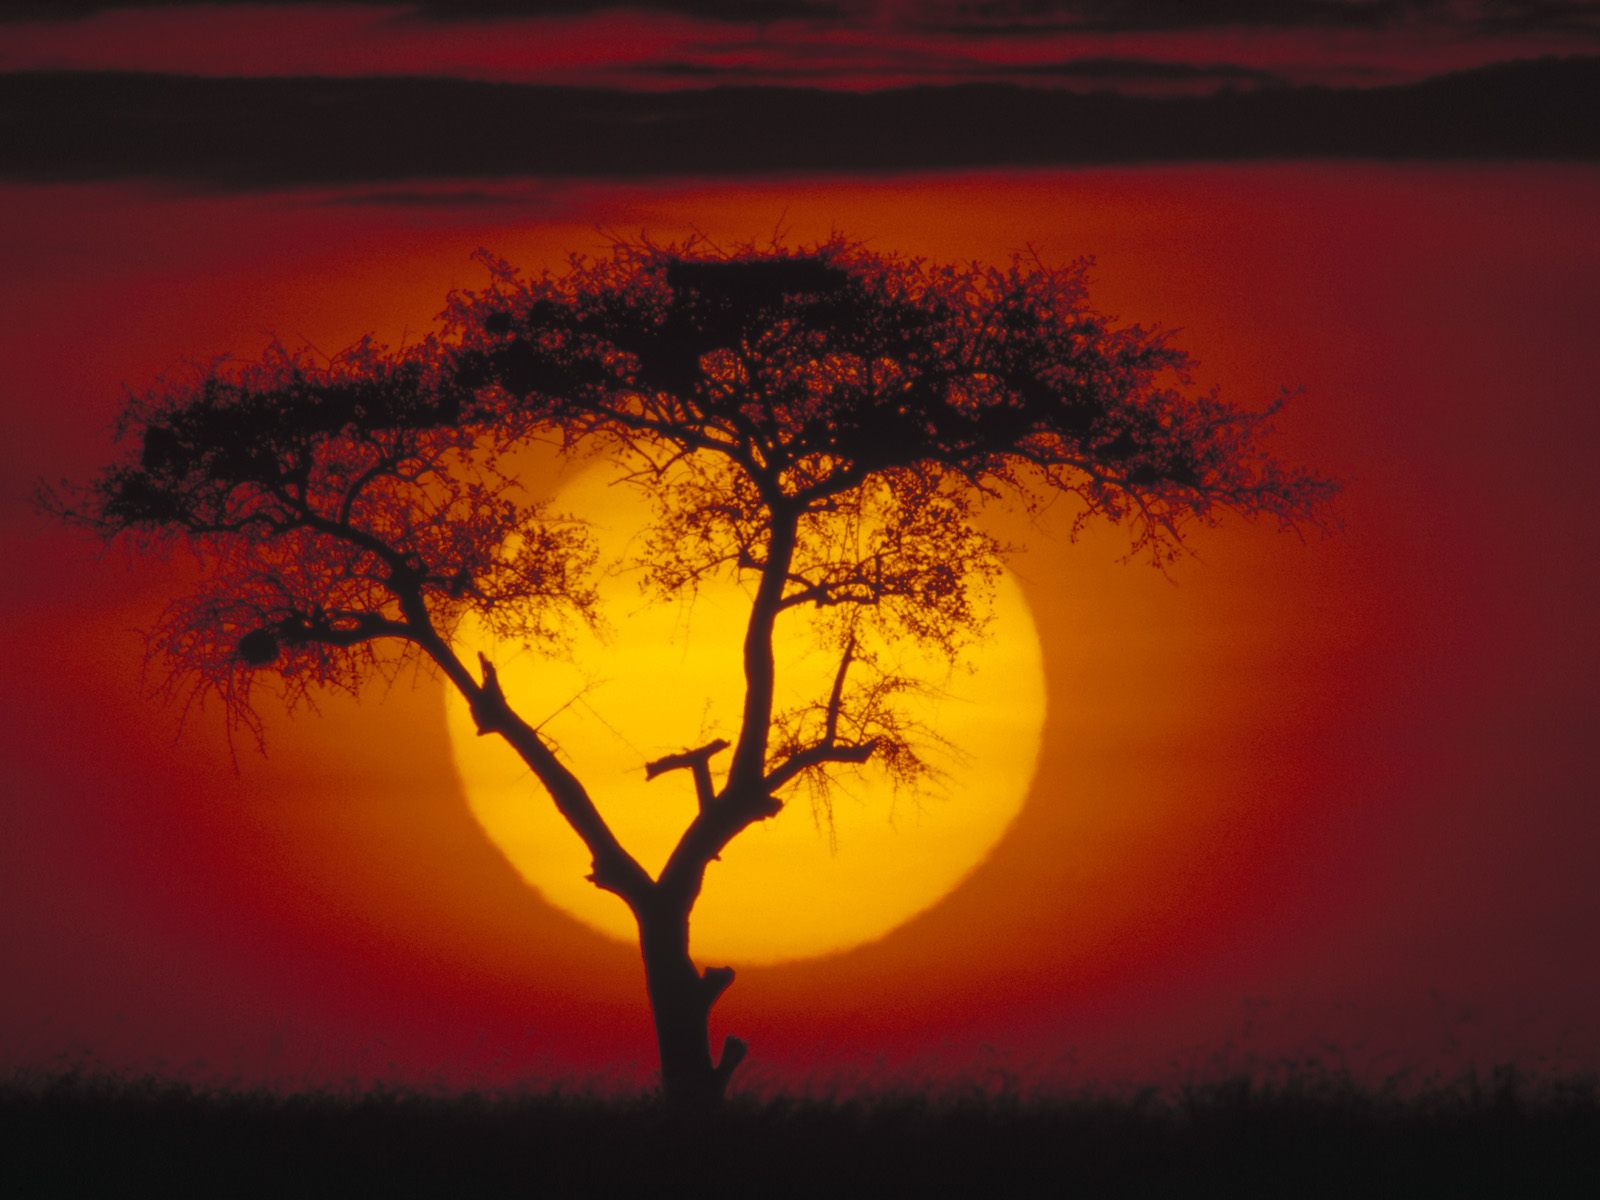 Kenya, Africa, Acacia Tree at sunset